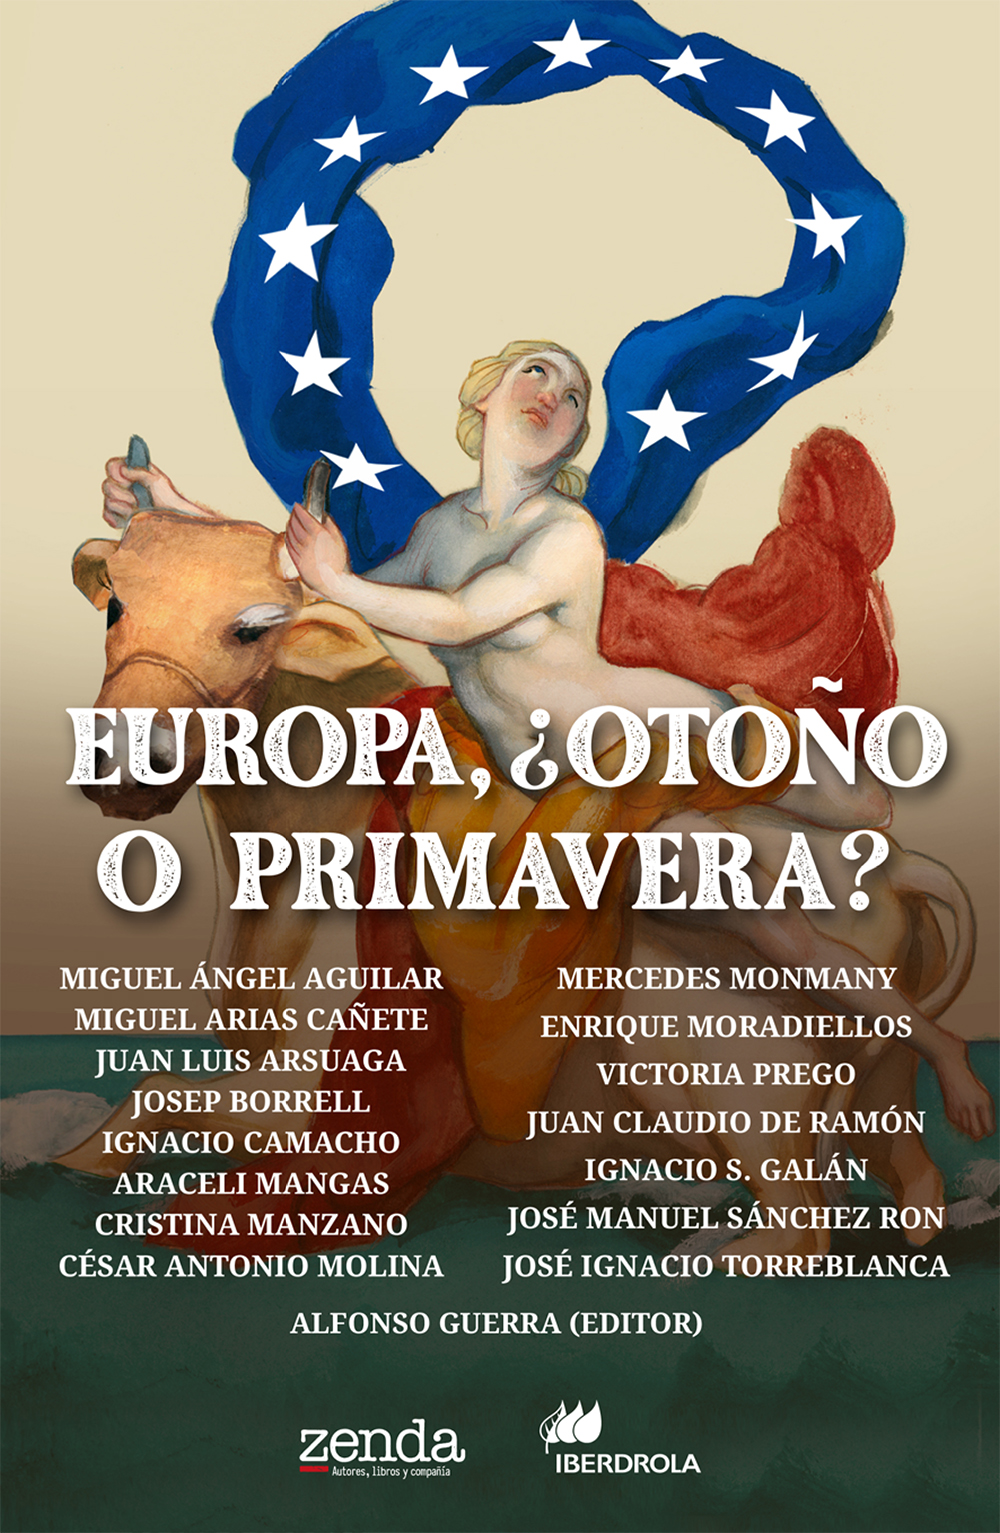 Alfonso Guerra, artífice de Europa, ¿otoño o primavera?, nuevo libro de Zenda